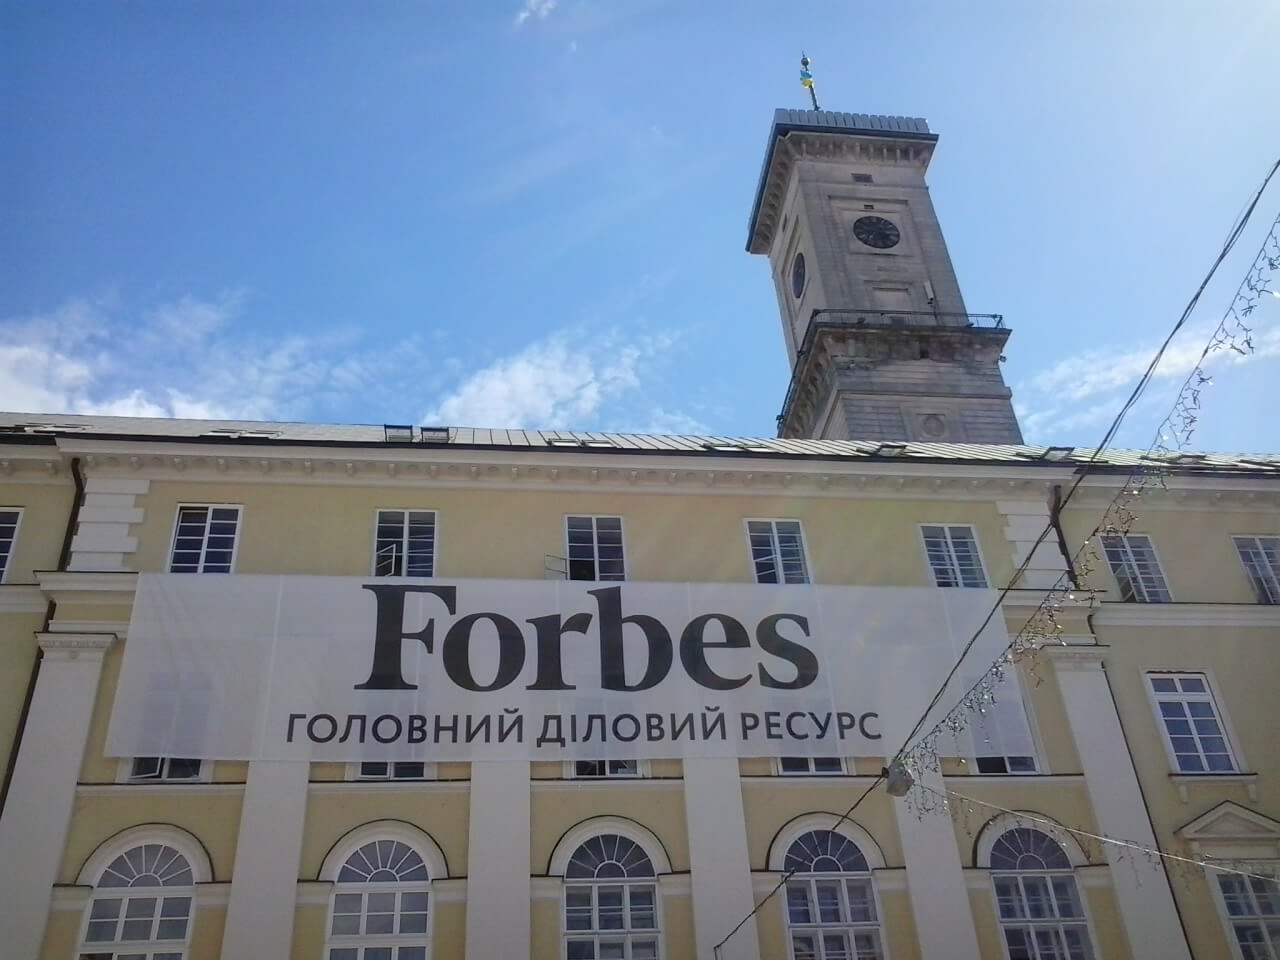 Forbes Advertisement on L'viv city council building.